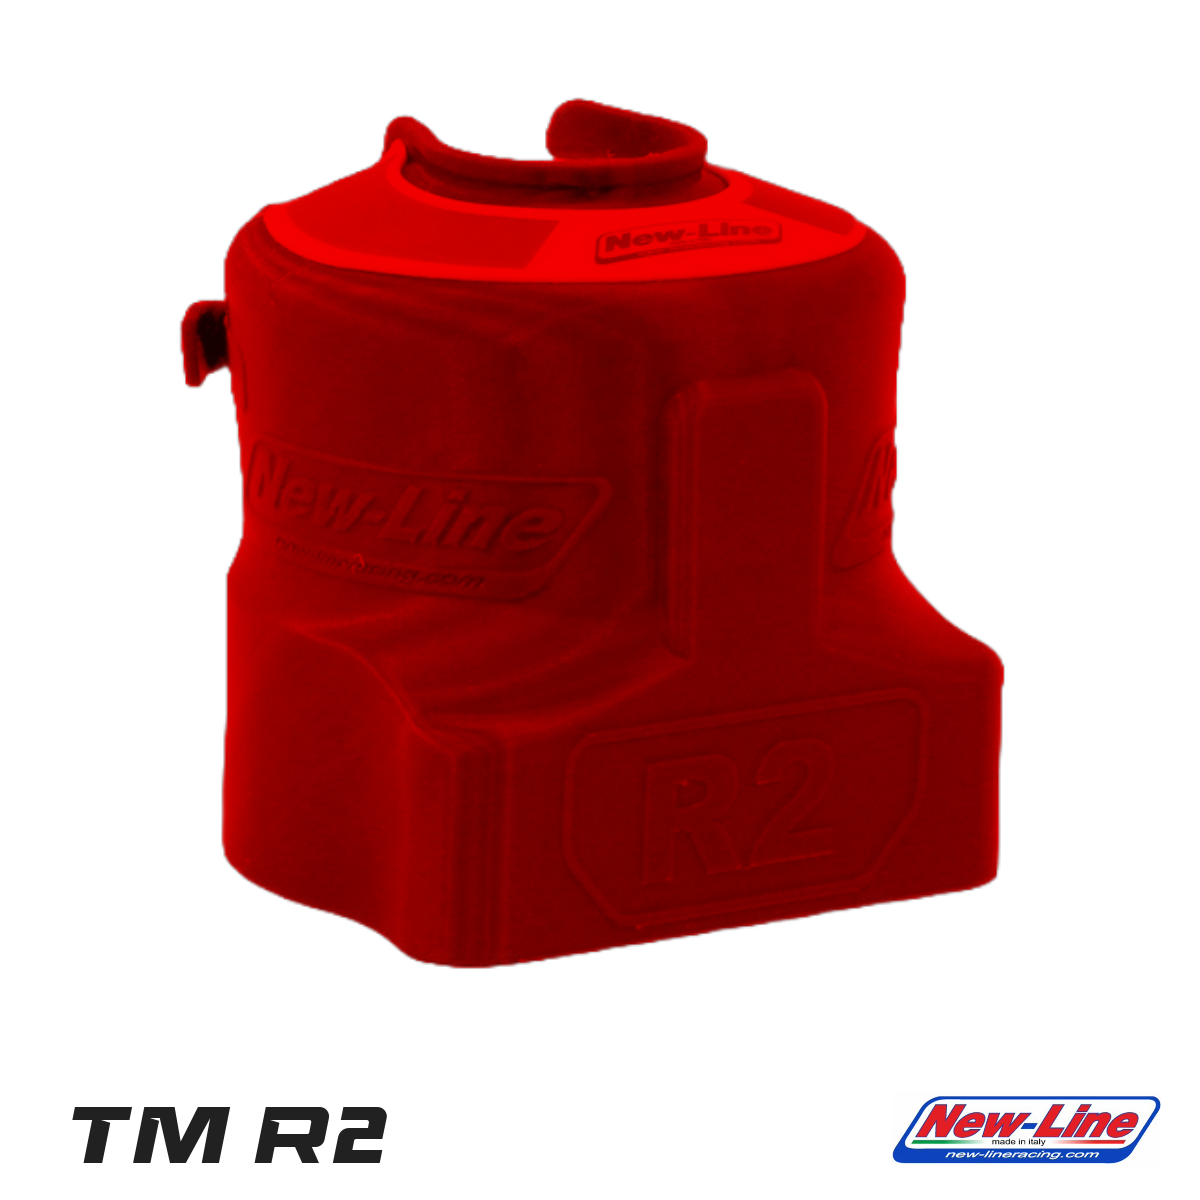 Protezione Cilindro KZ TM R2 Rosso